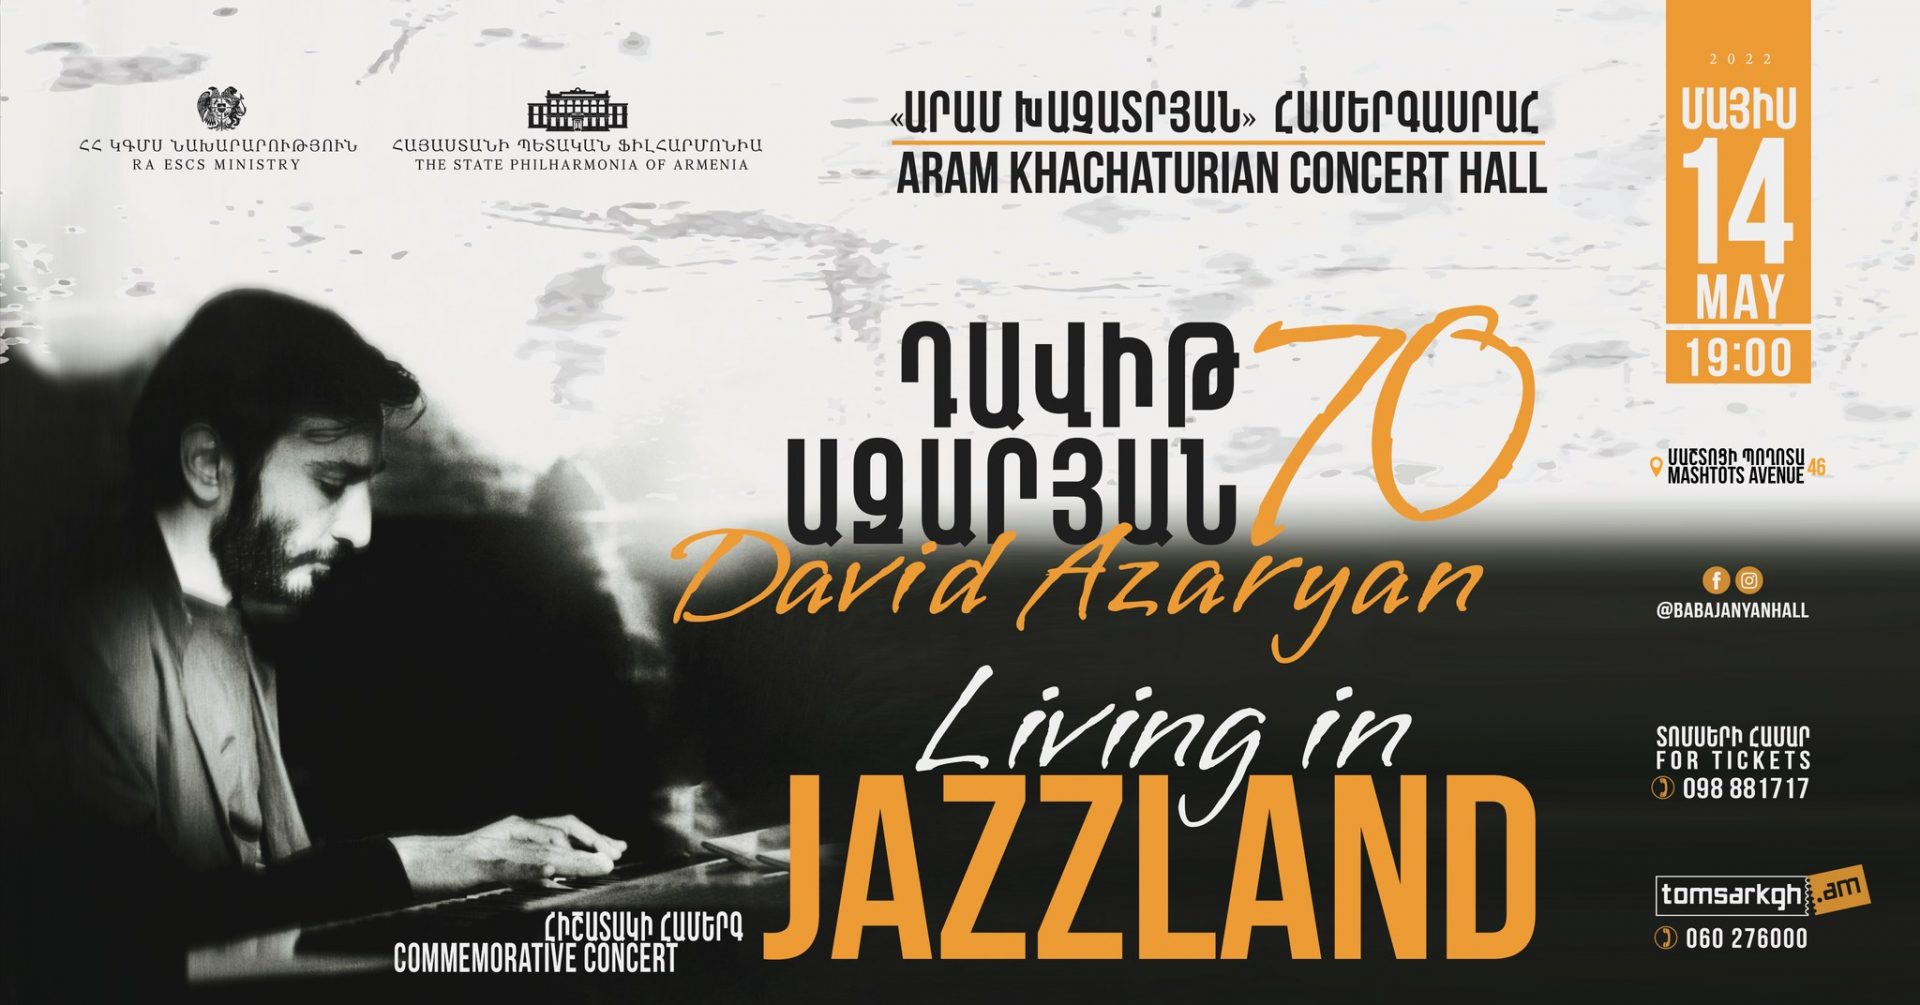 Цены в ереване 2024. Aram Khachaturian Concert Hall. Концерт в Ереване. Ереван афиша концертов. Азнавур концерт в Ереване афиша.